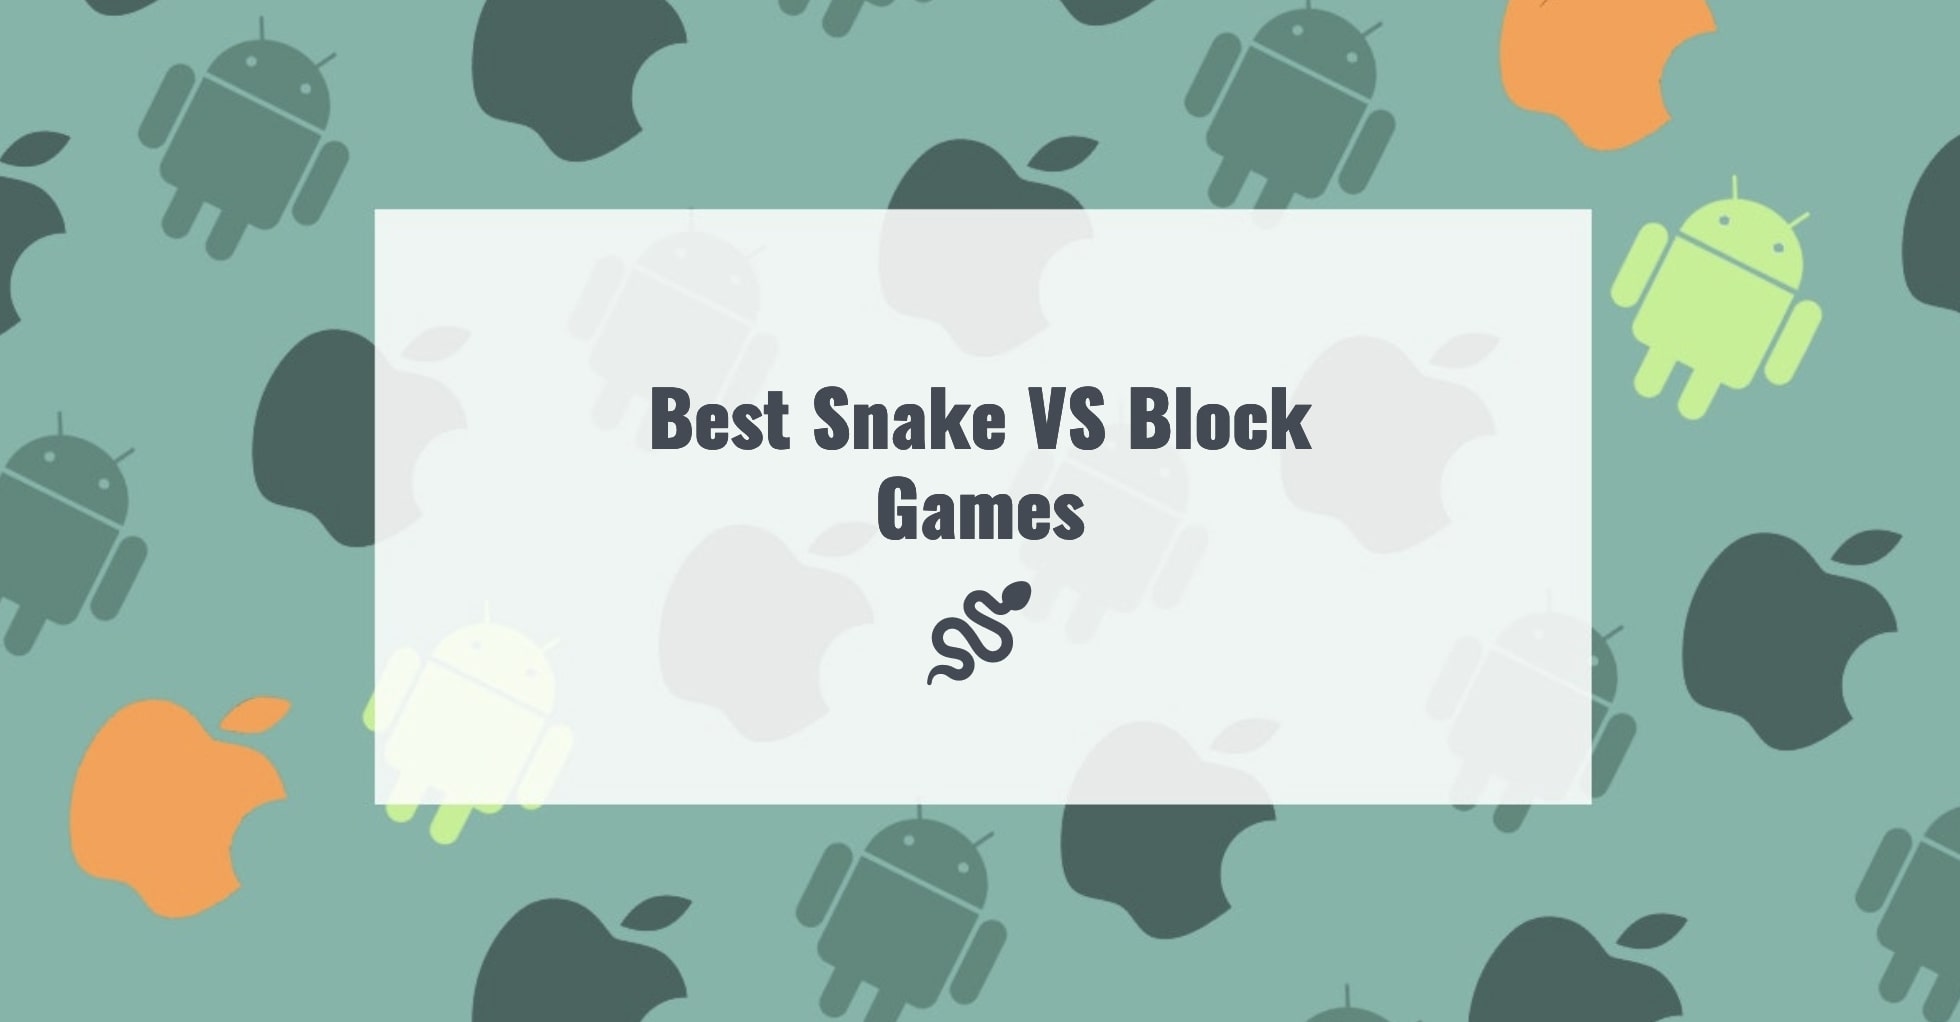 Best Snake VS Block Games